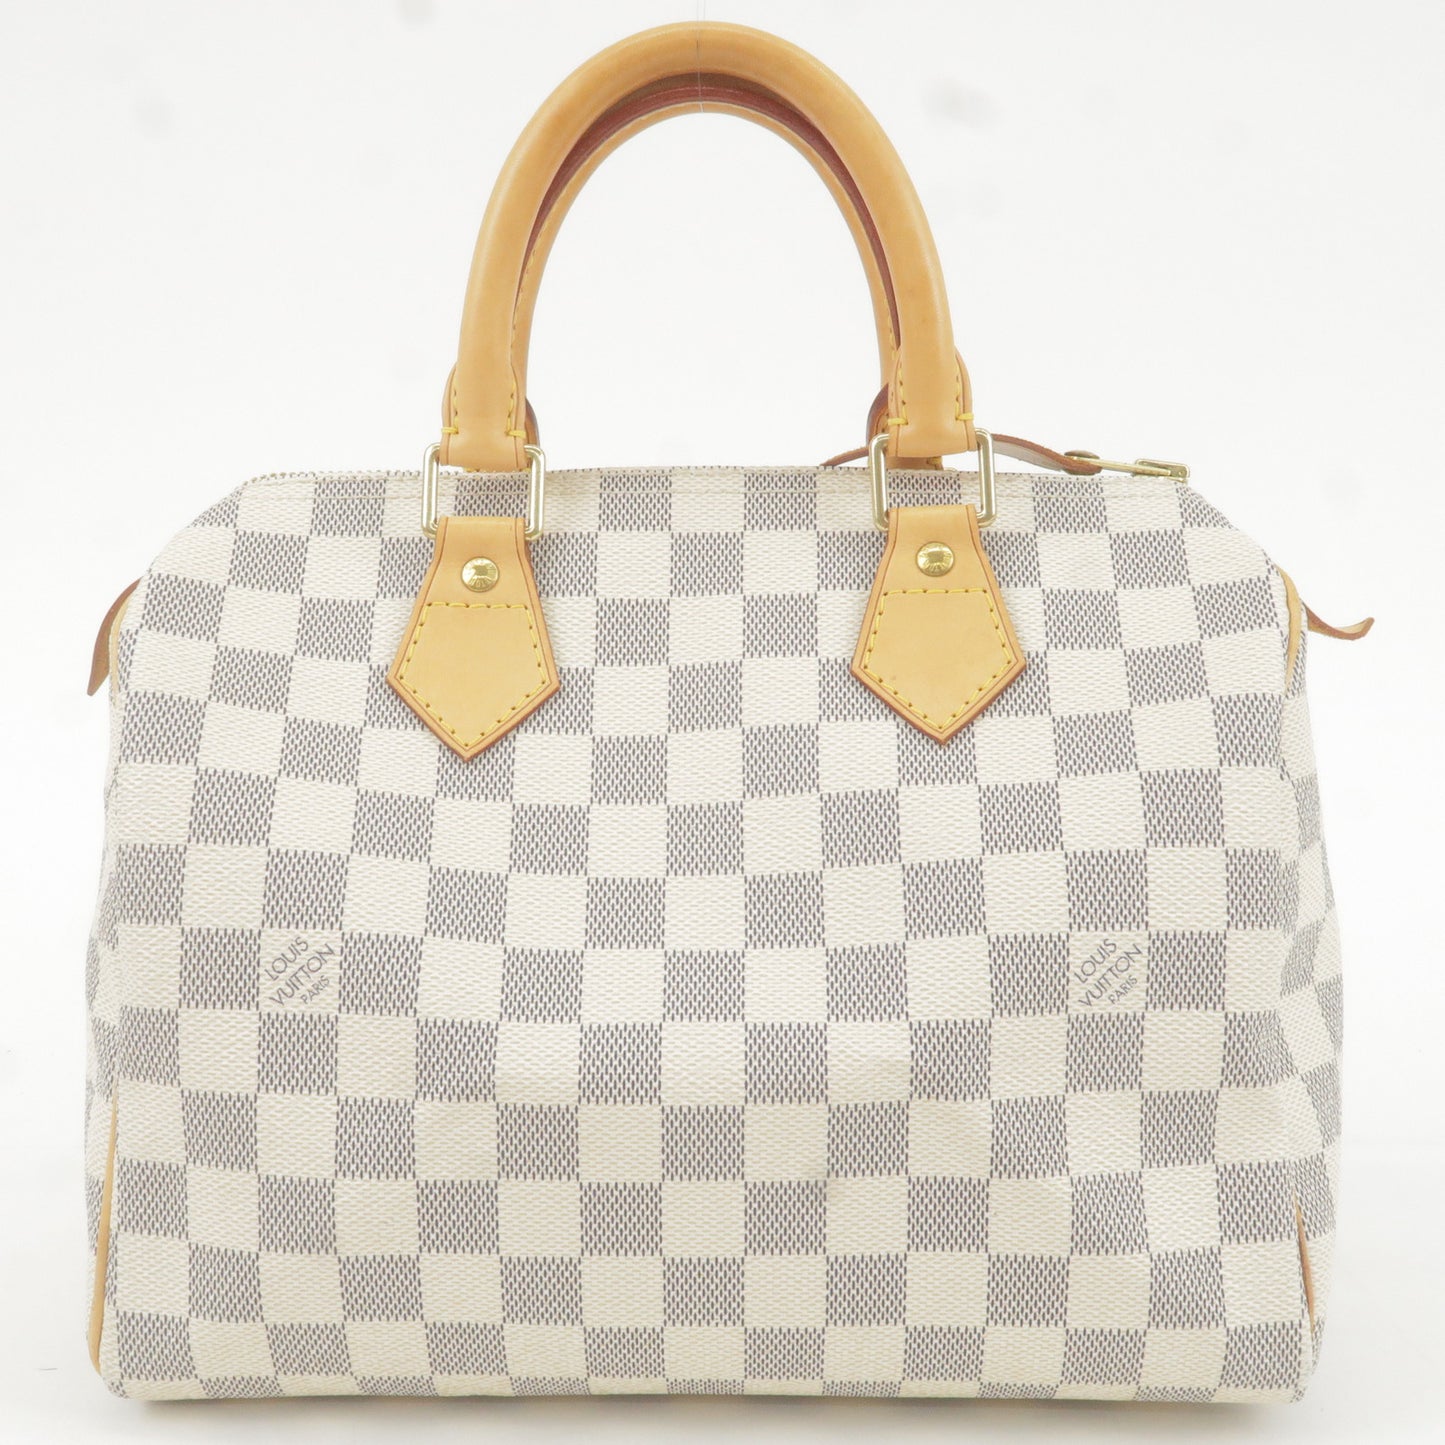 Louis Vuitton Speedy 25 Bandouliere Damier Azur, Best Summer Bag